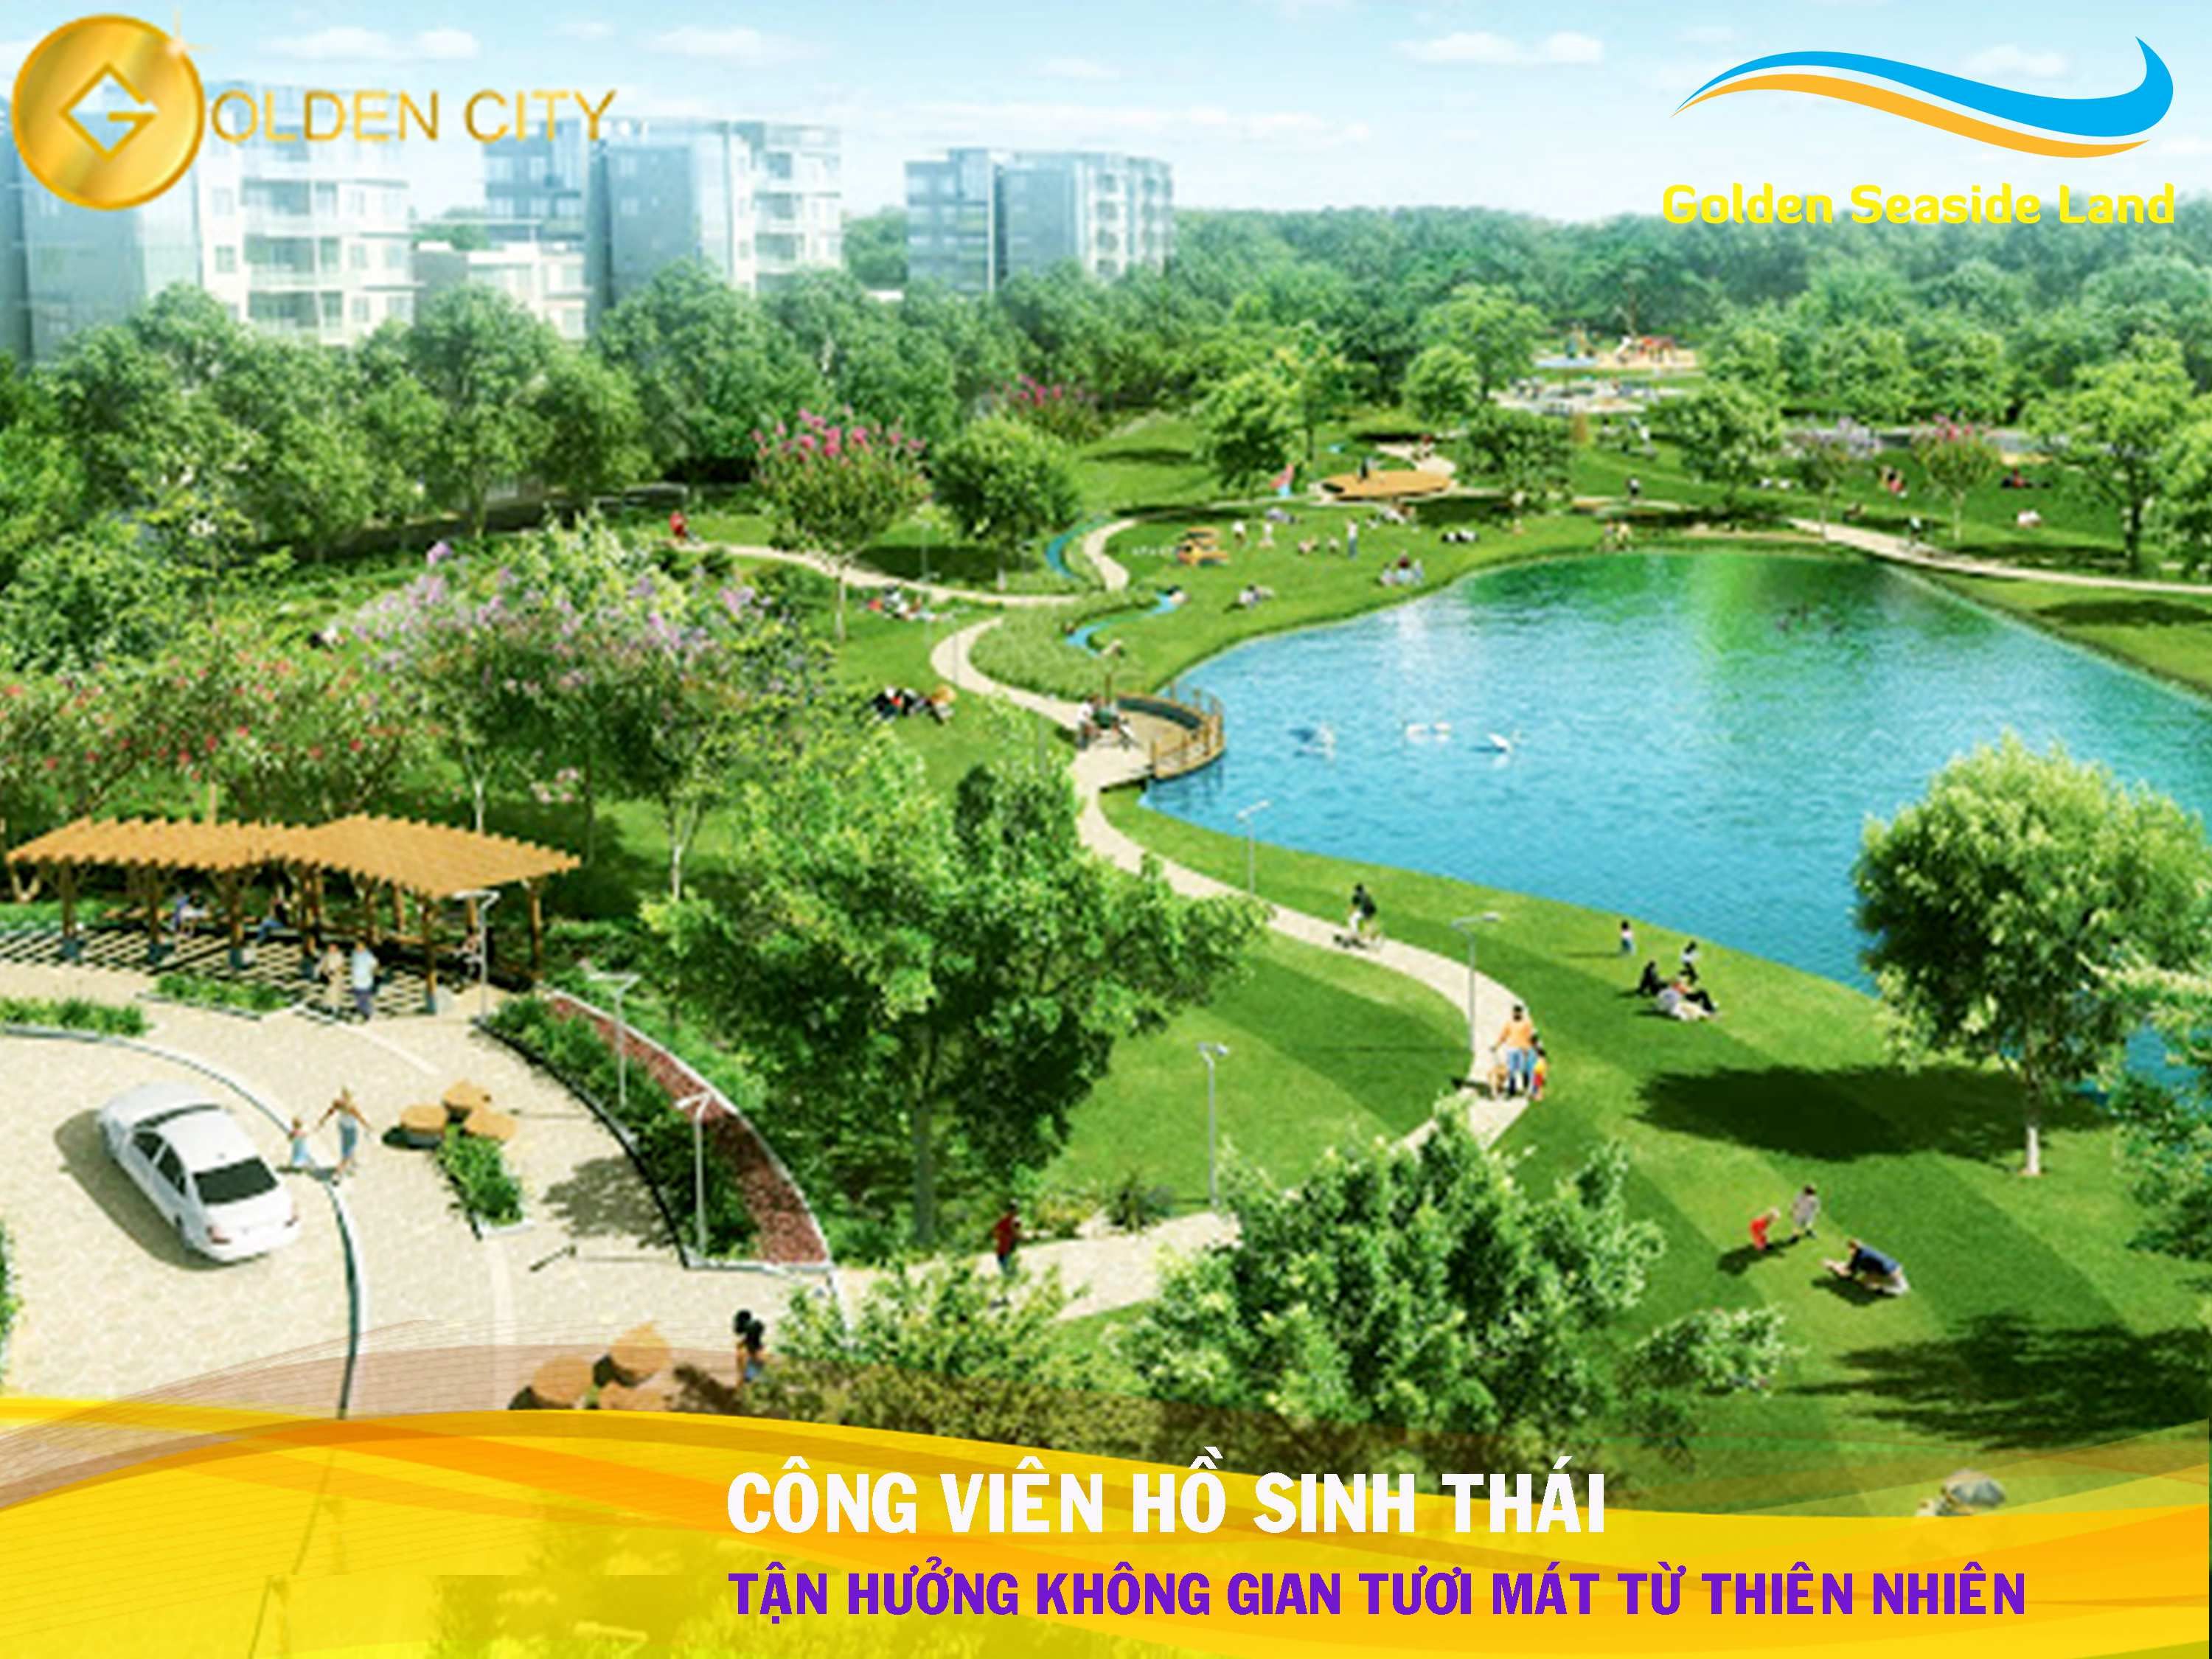 Công viên hồ sinh thái Golden City